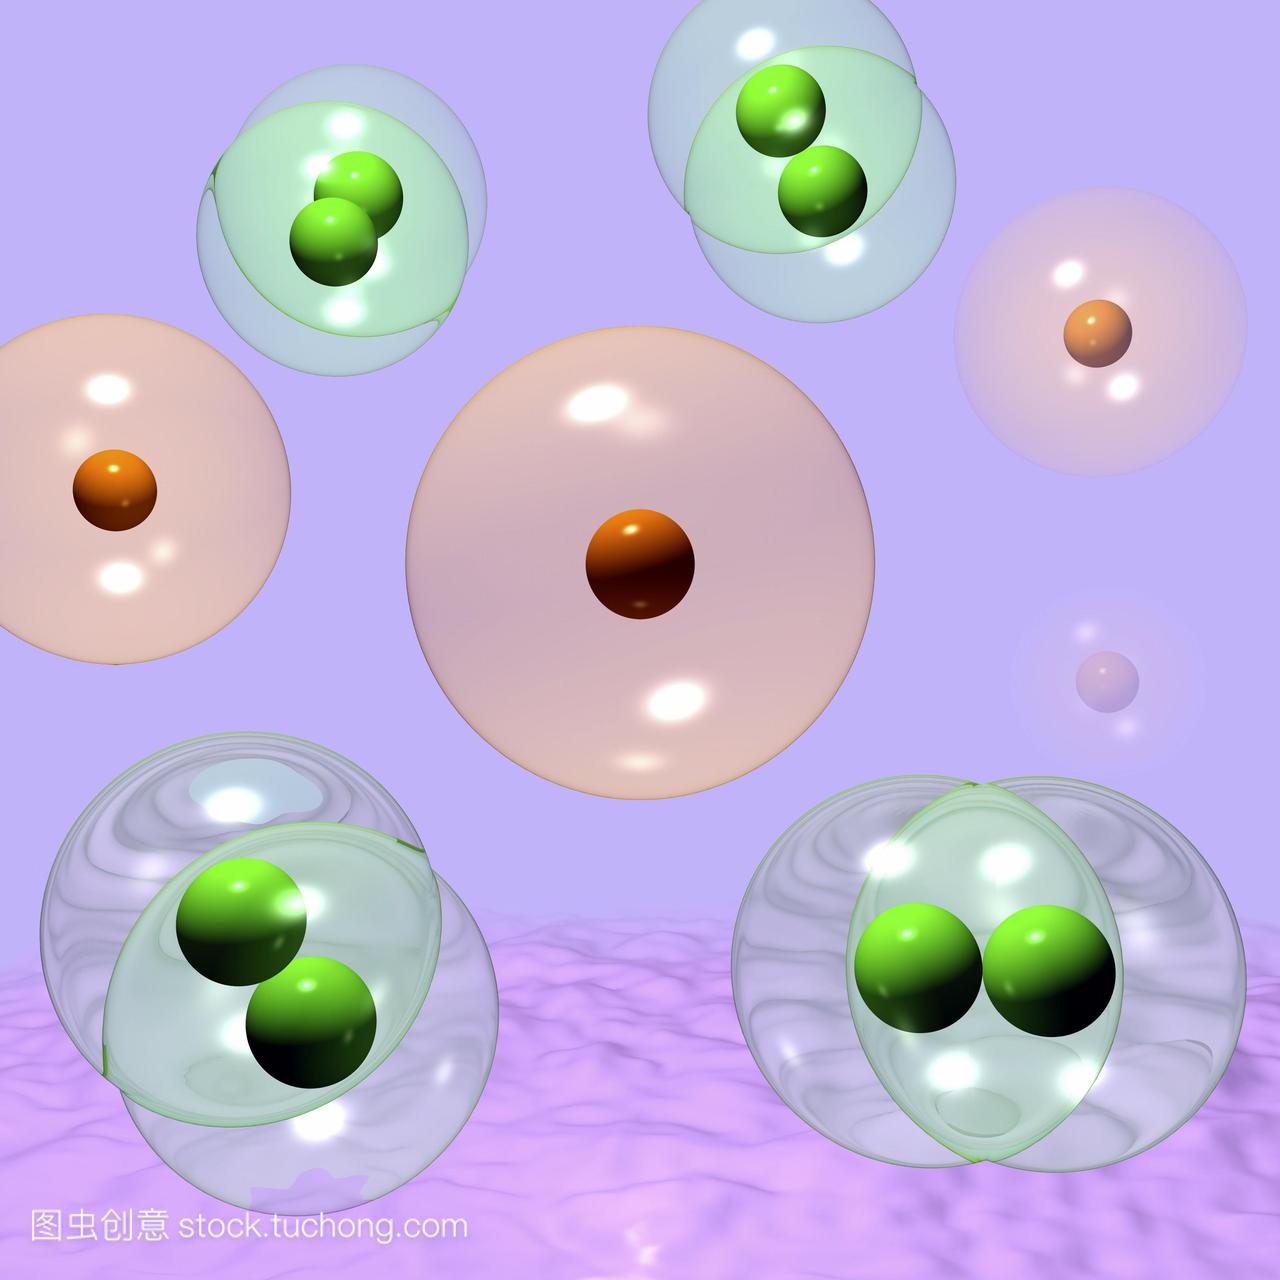 氢气h2然而是一个双原子分子.每个原子有核深绿色包围一个